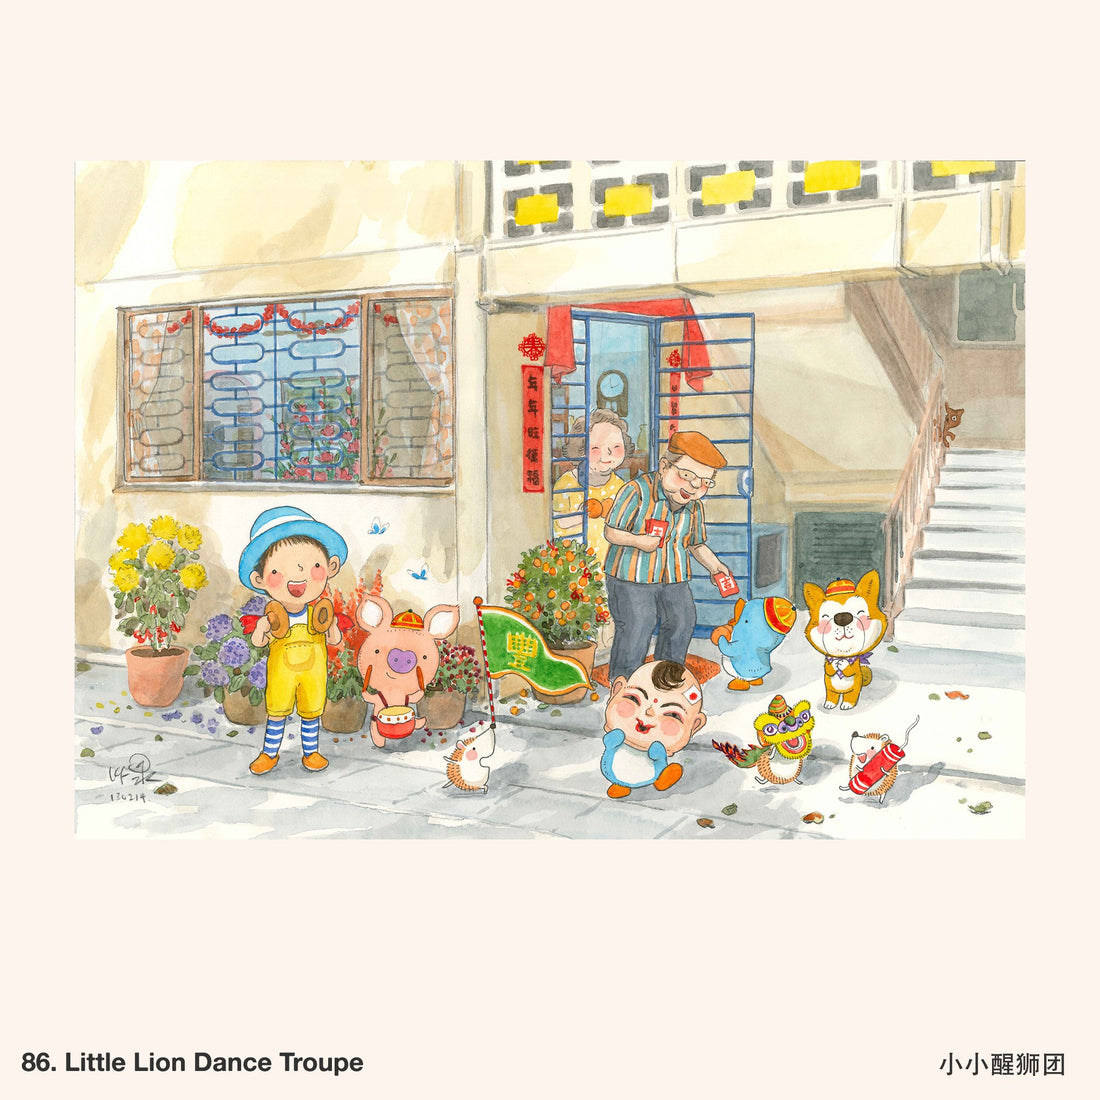 86. Little Lion Dance Troupe Artwork